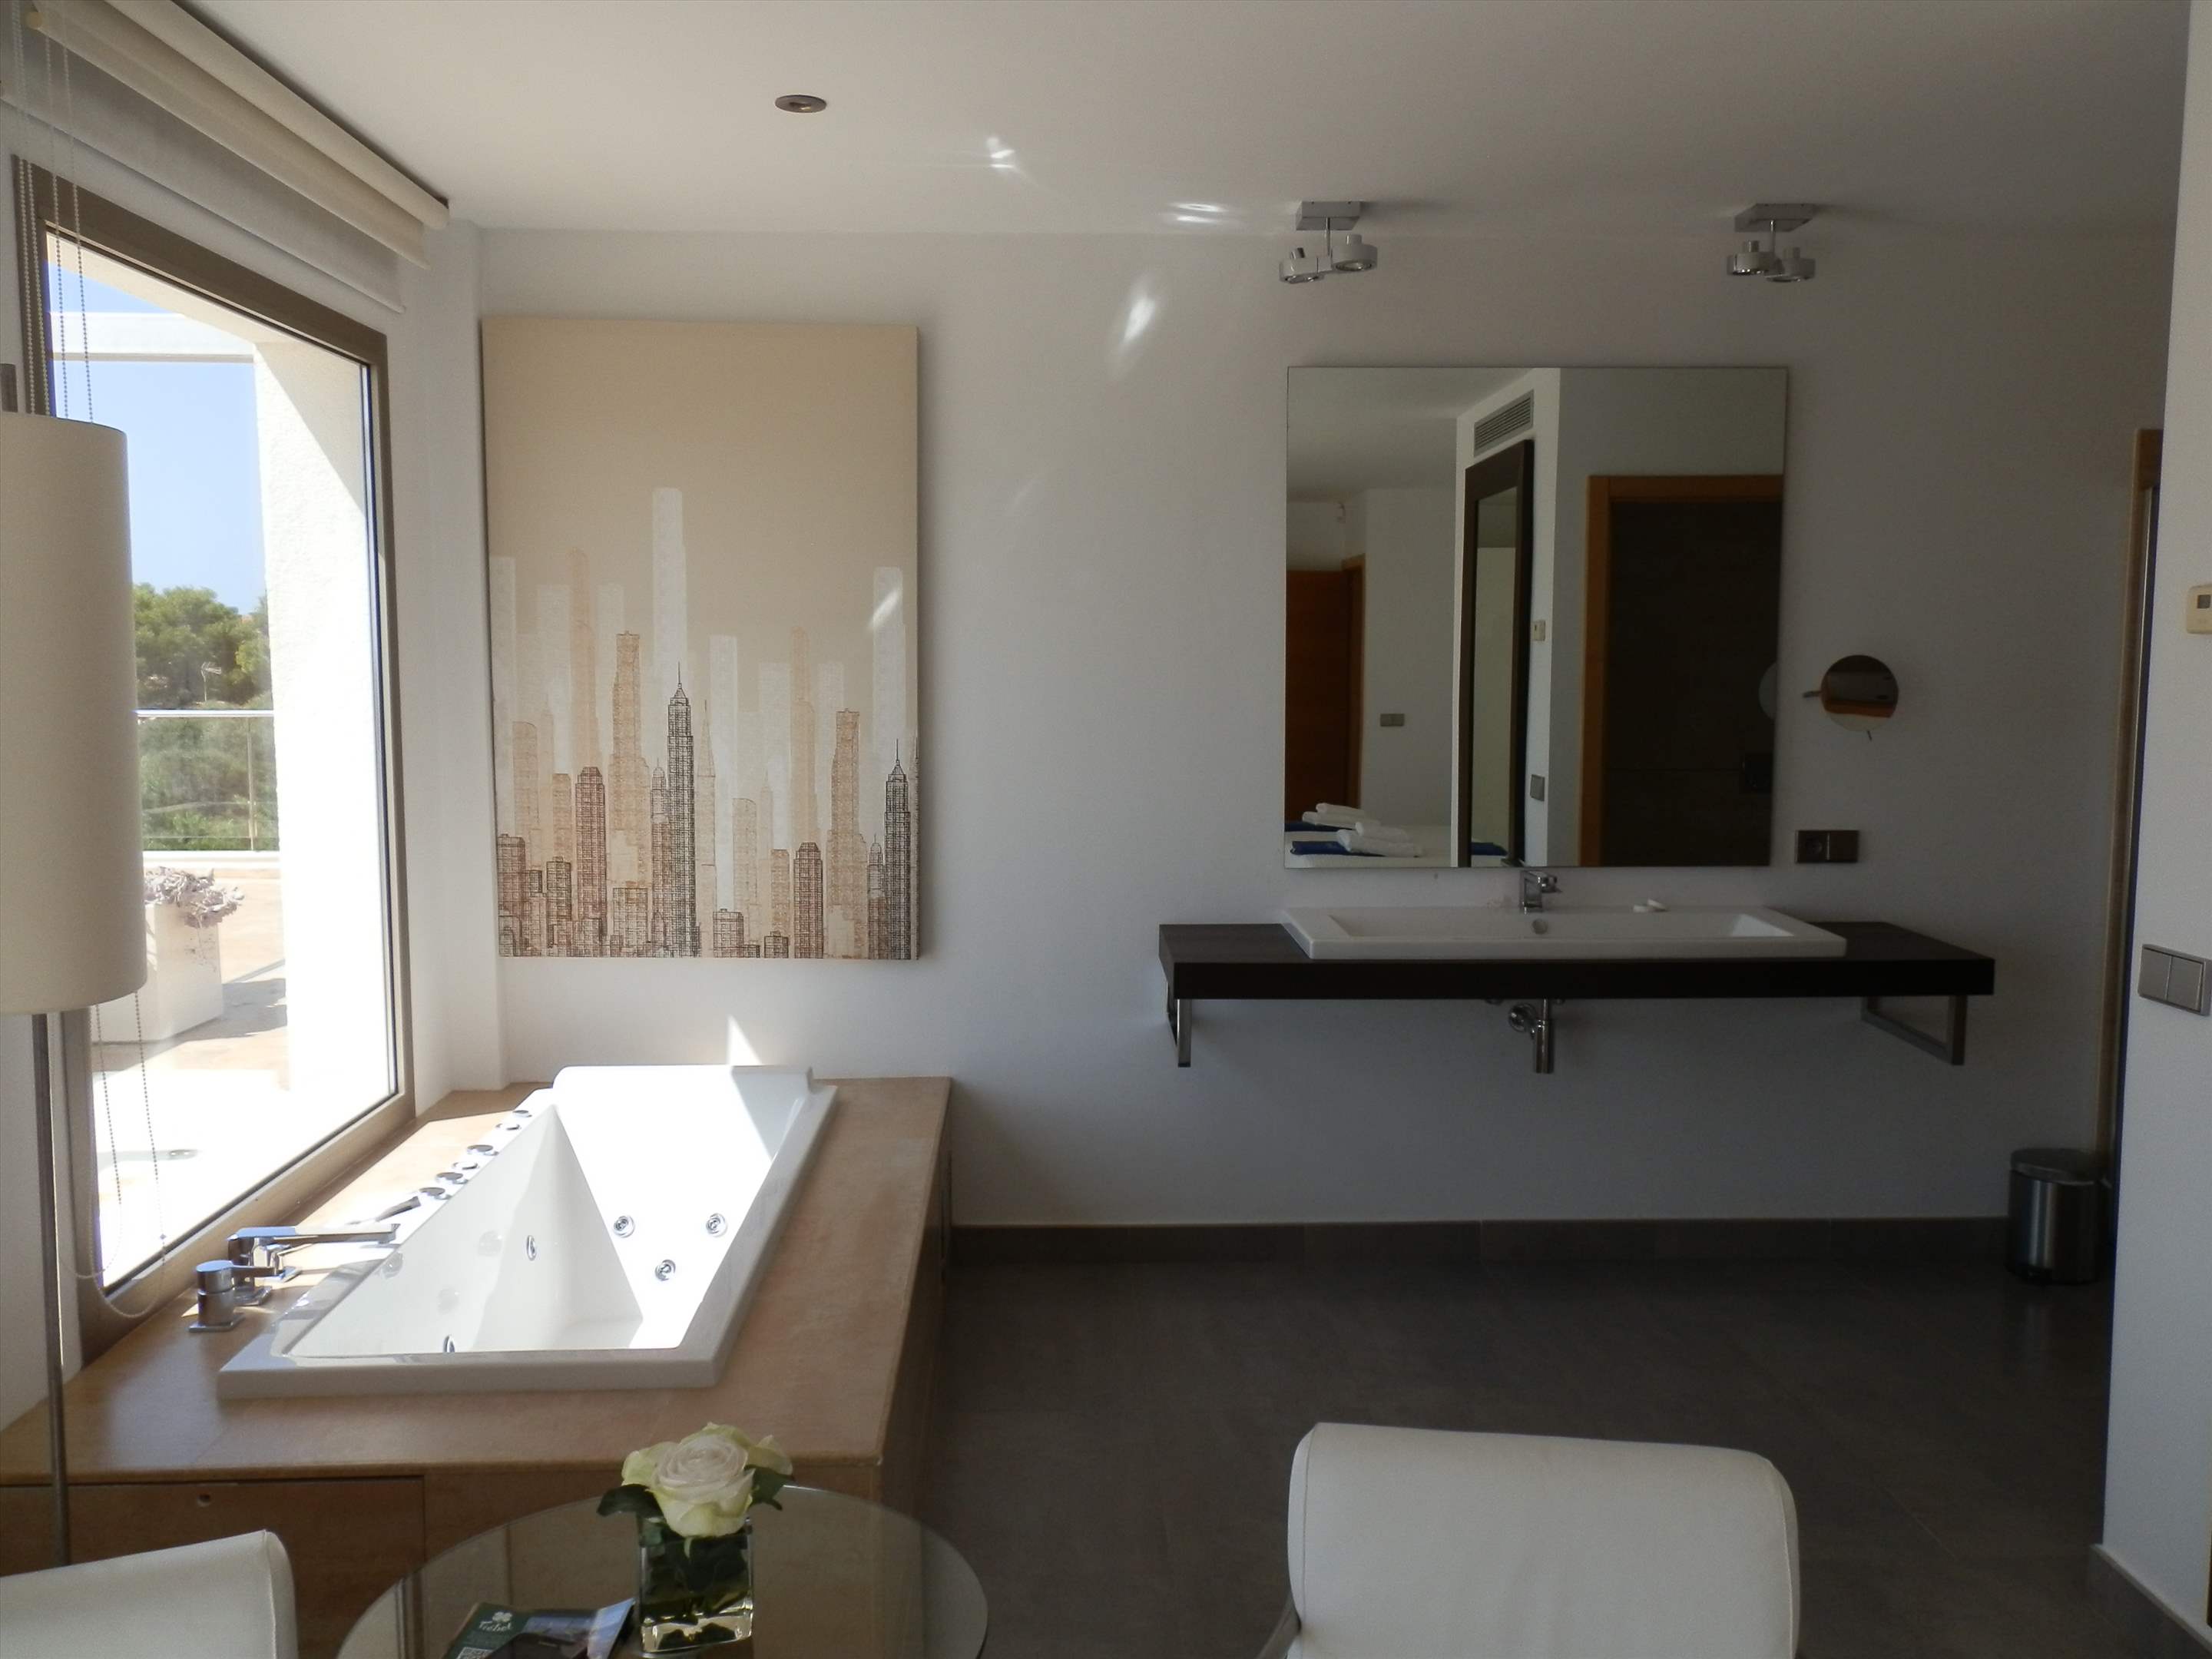 Casa Pitiusa, 6 Bedroom rate, 6 bedroom villa in Mahon, San Luis & South East, Menorca Photo #13